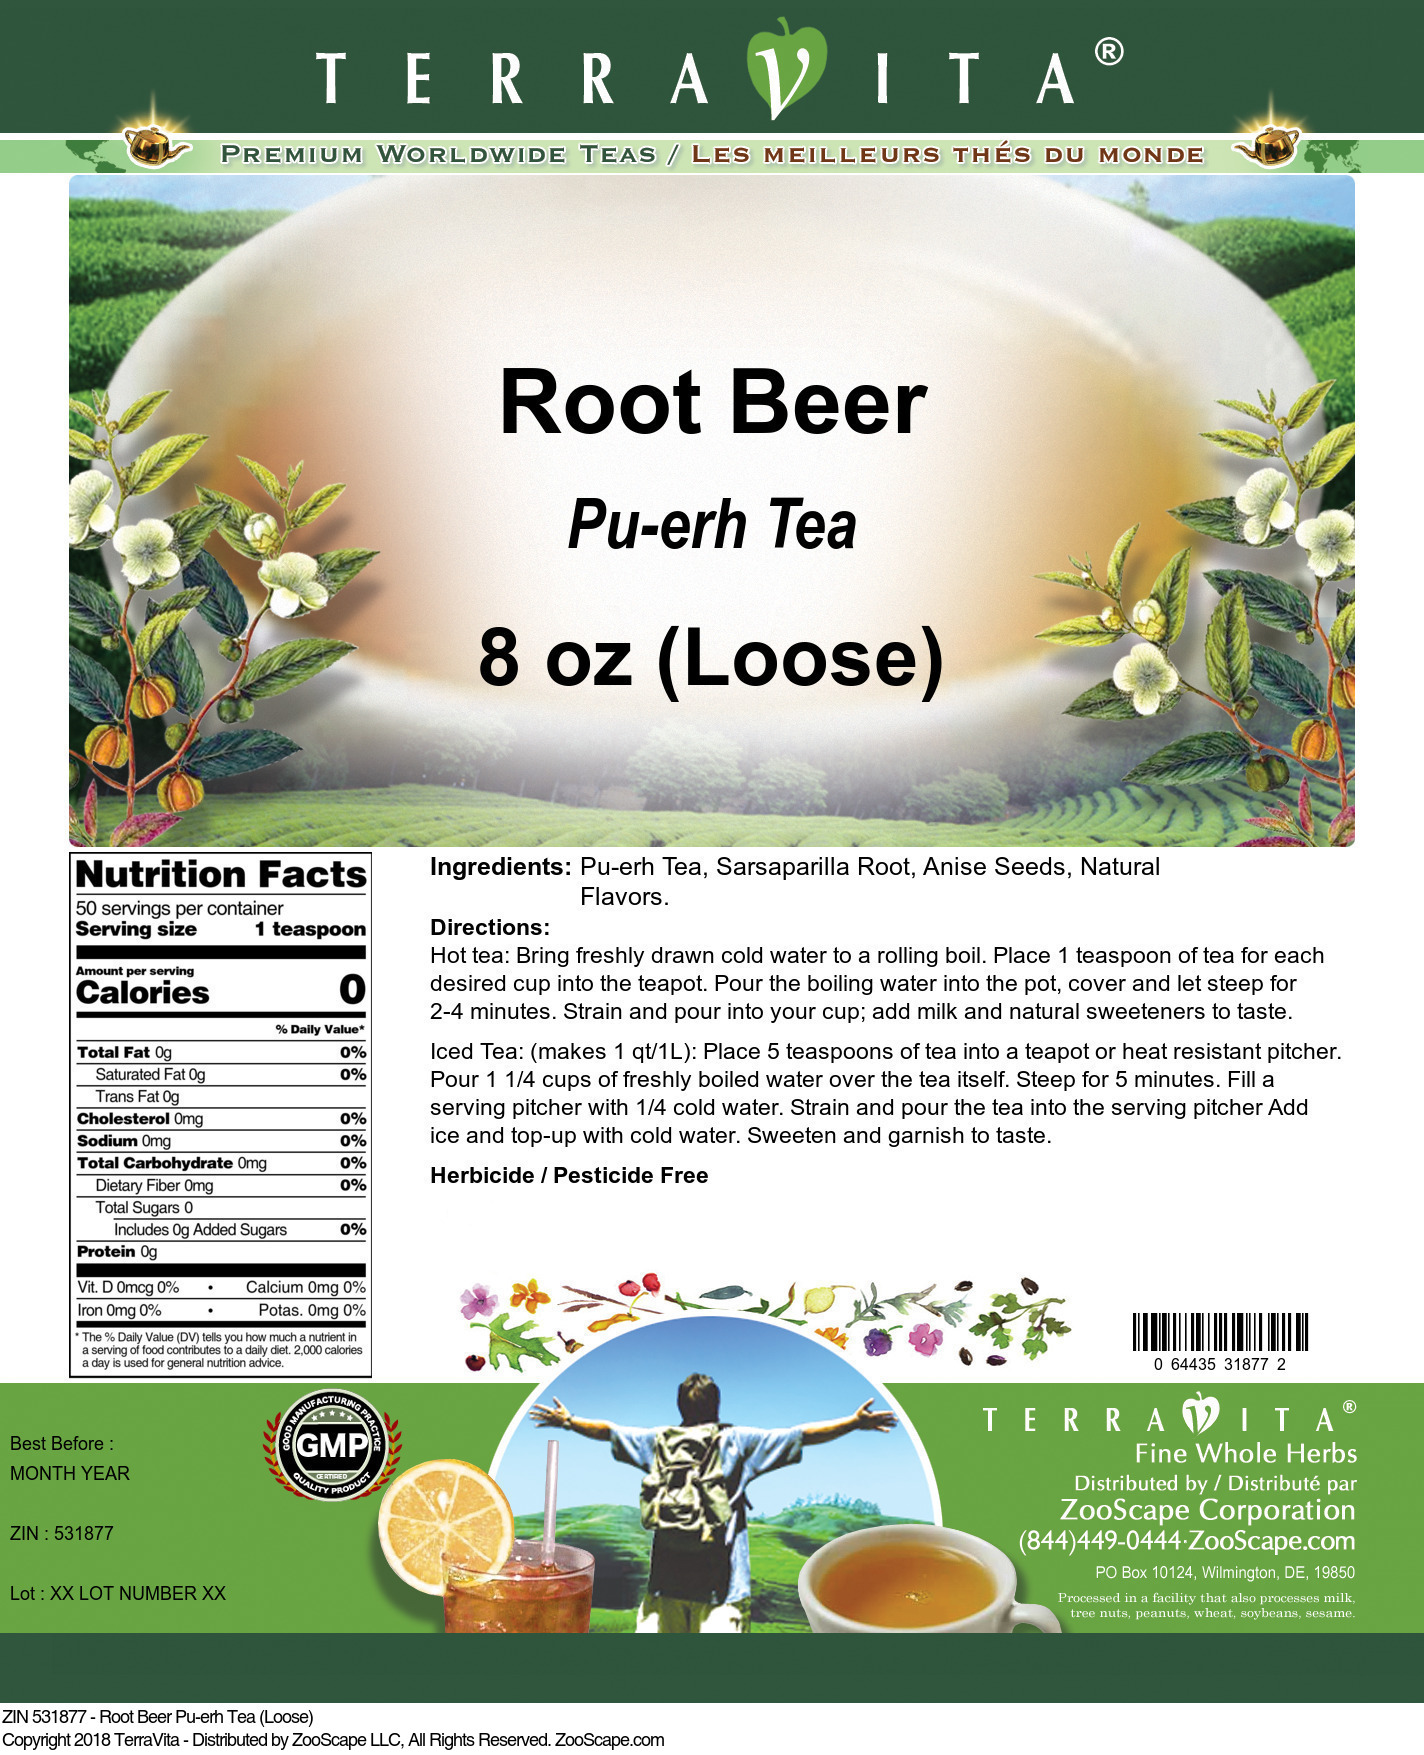 Root Beer Pu-erh Tea (Loose) - Label